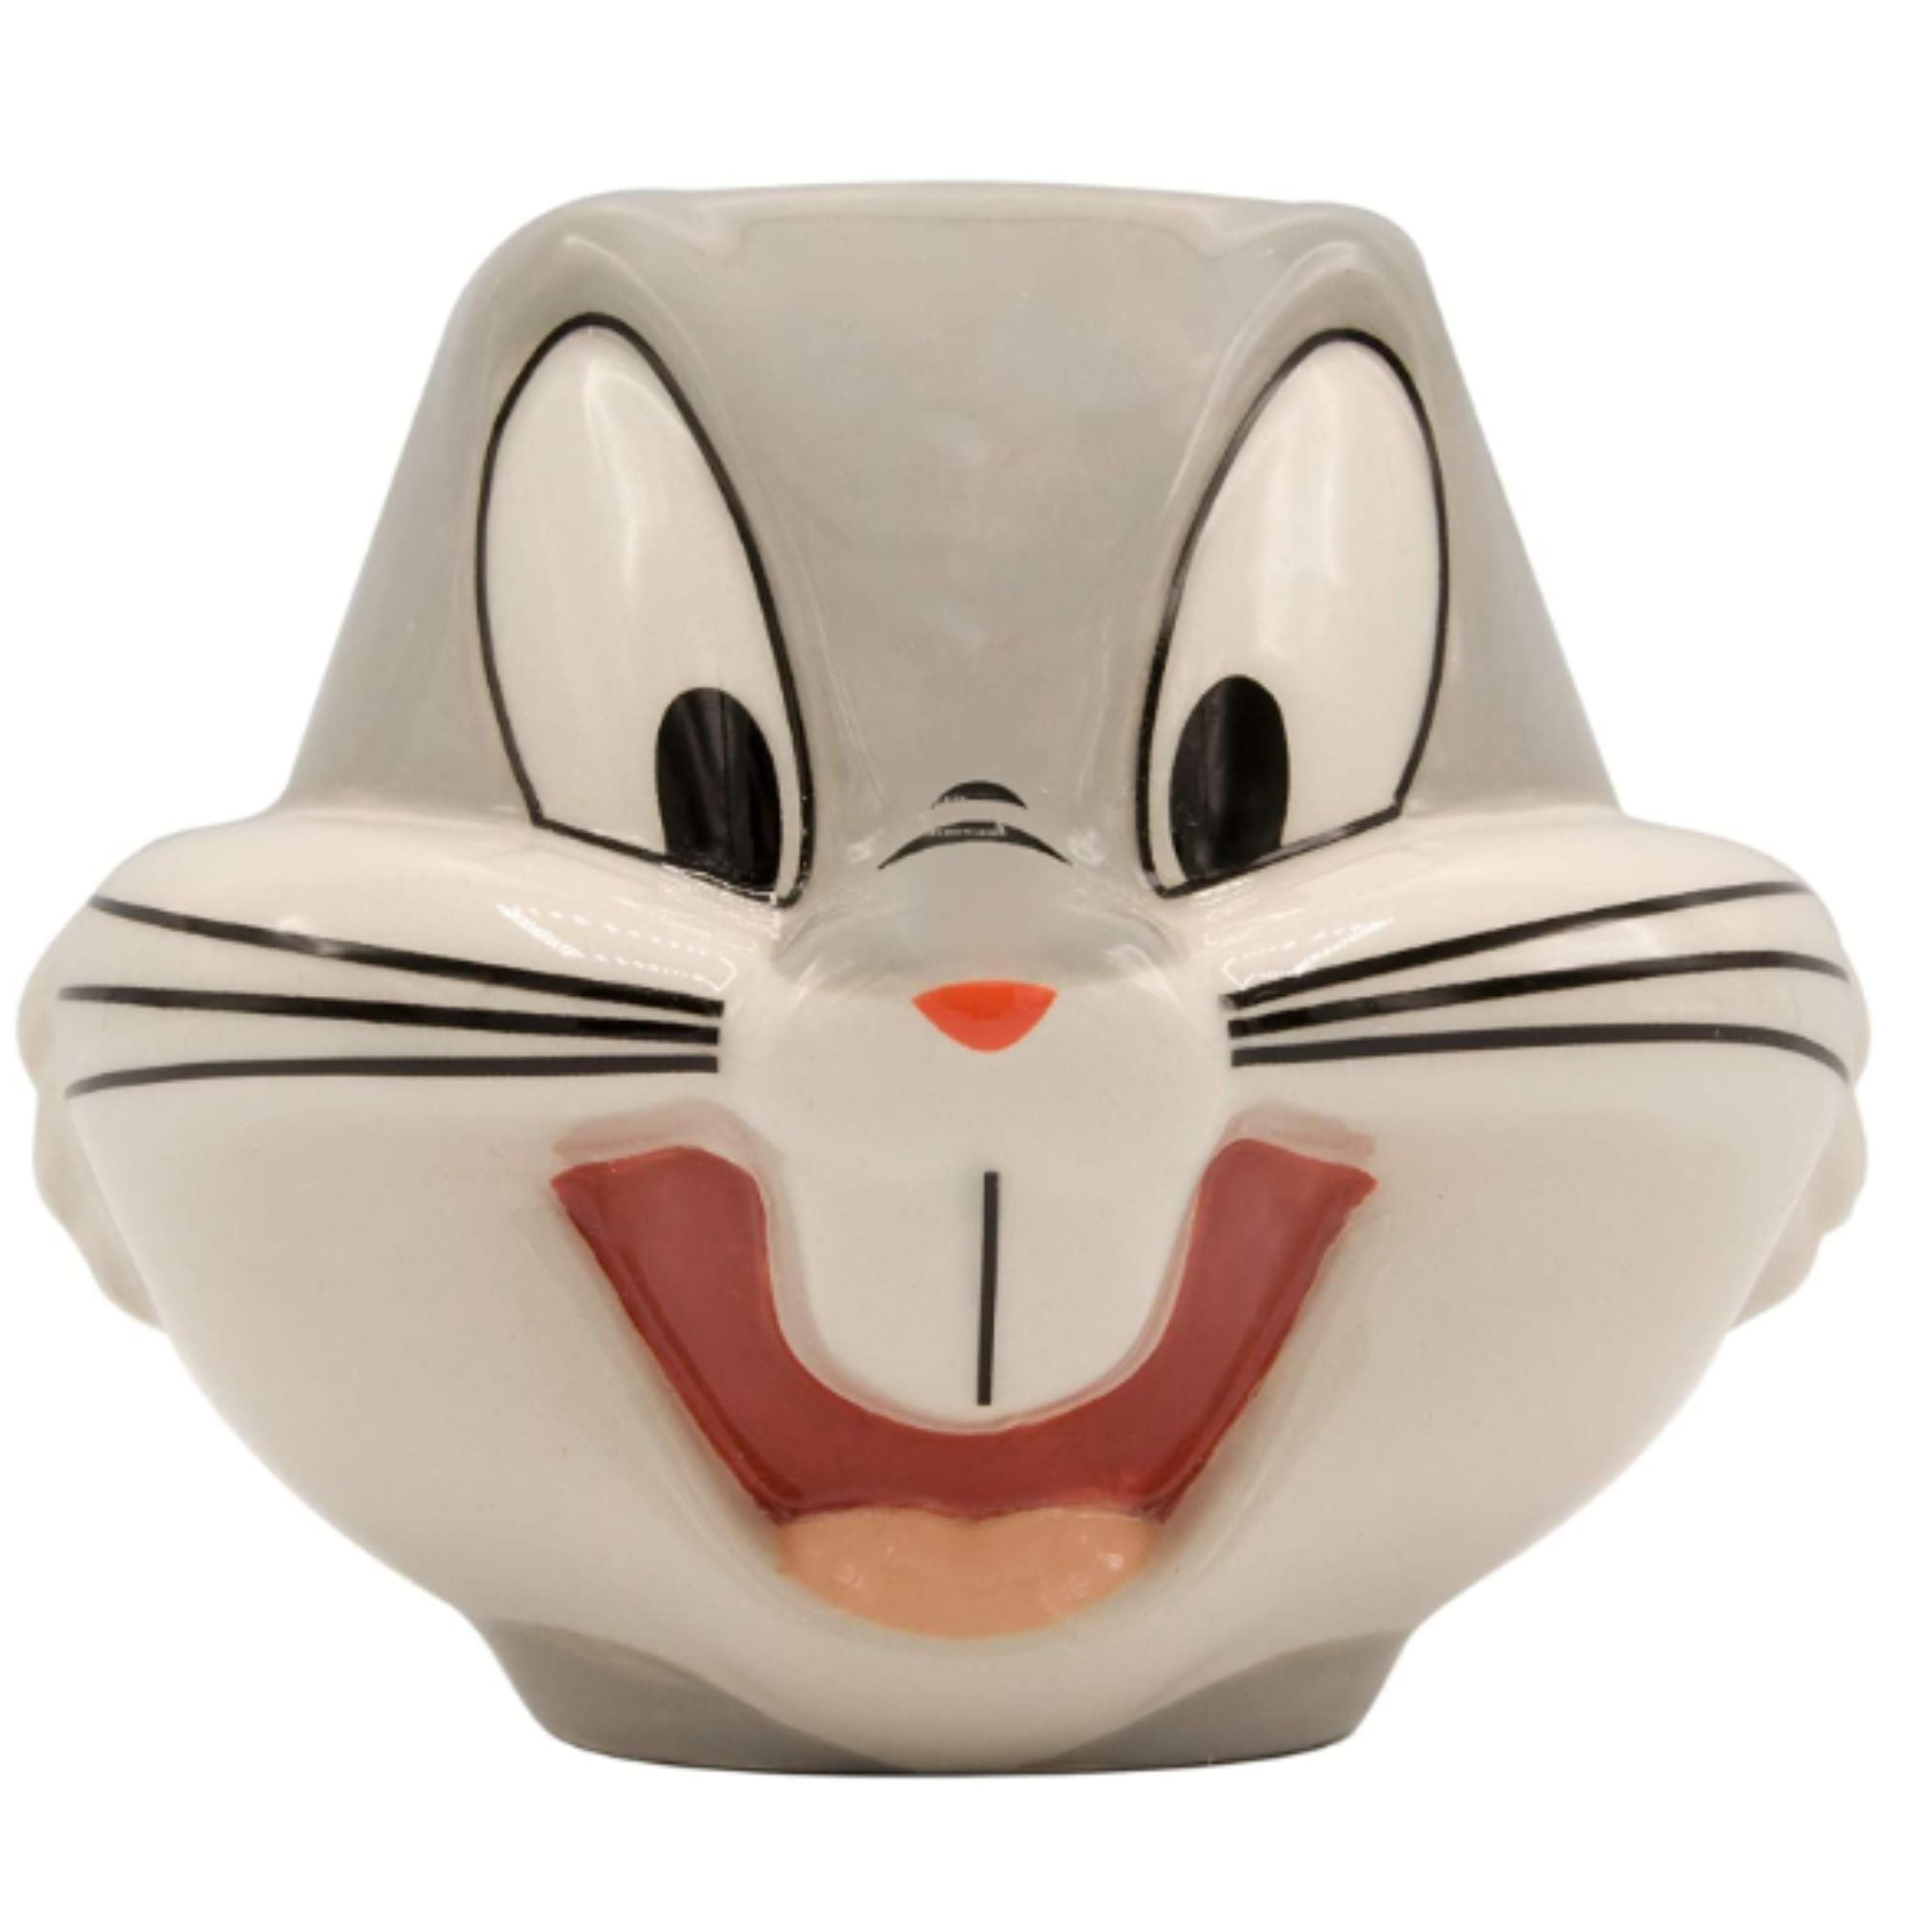 Taza Mediana 3D Fun Kids Warner Bros. Bugs Bunny Ceramica 650ml